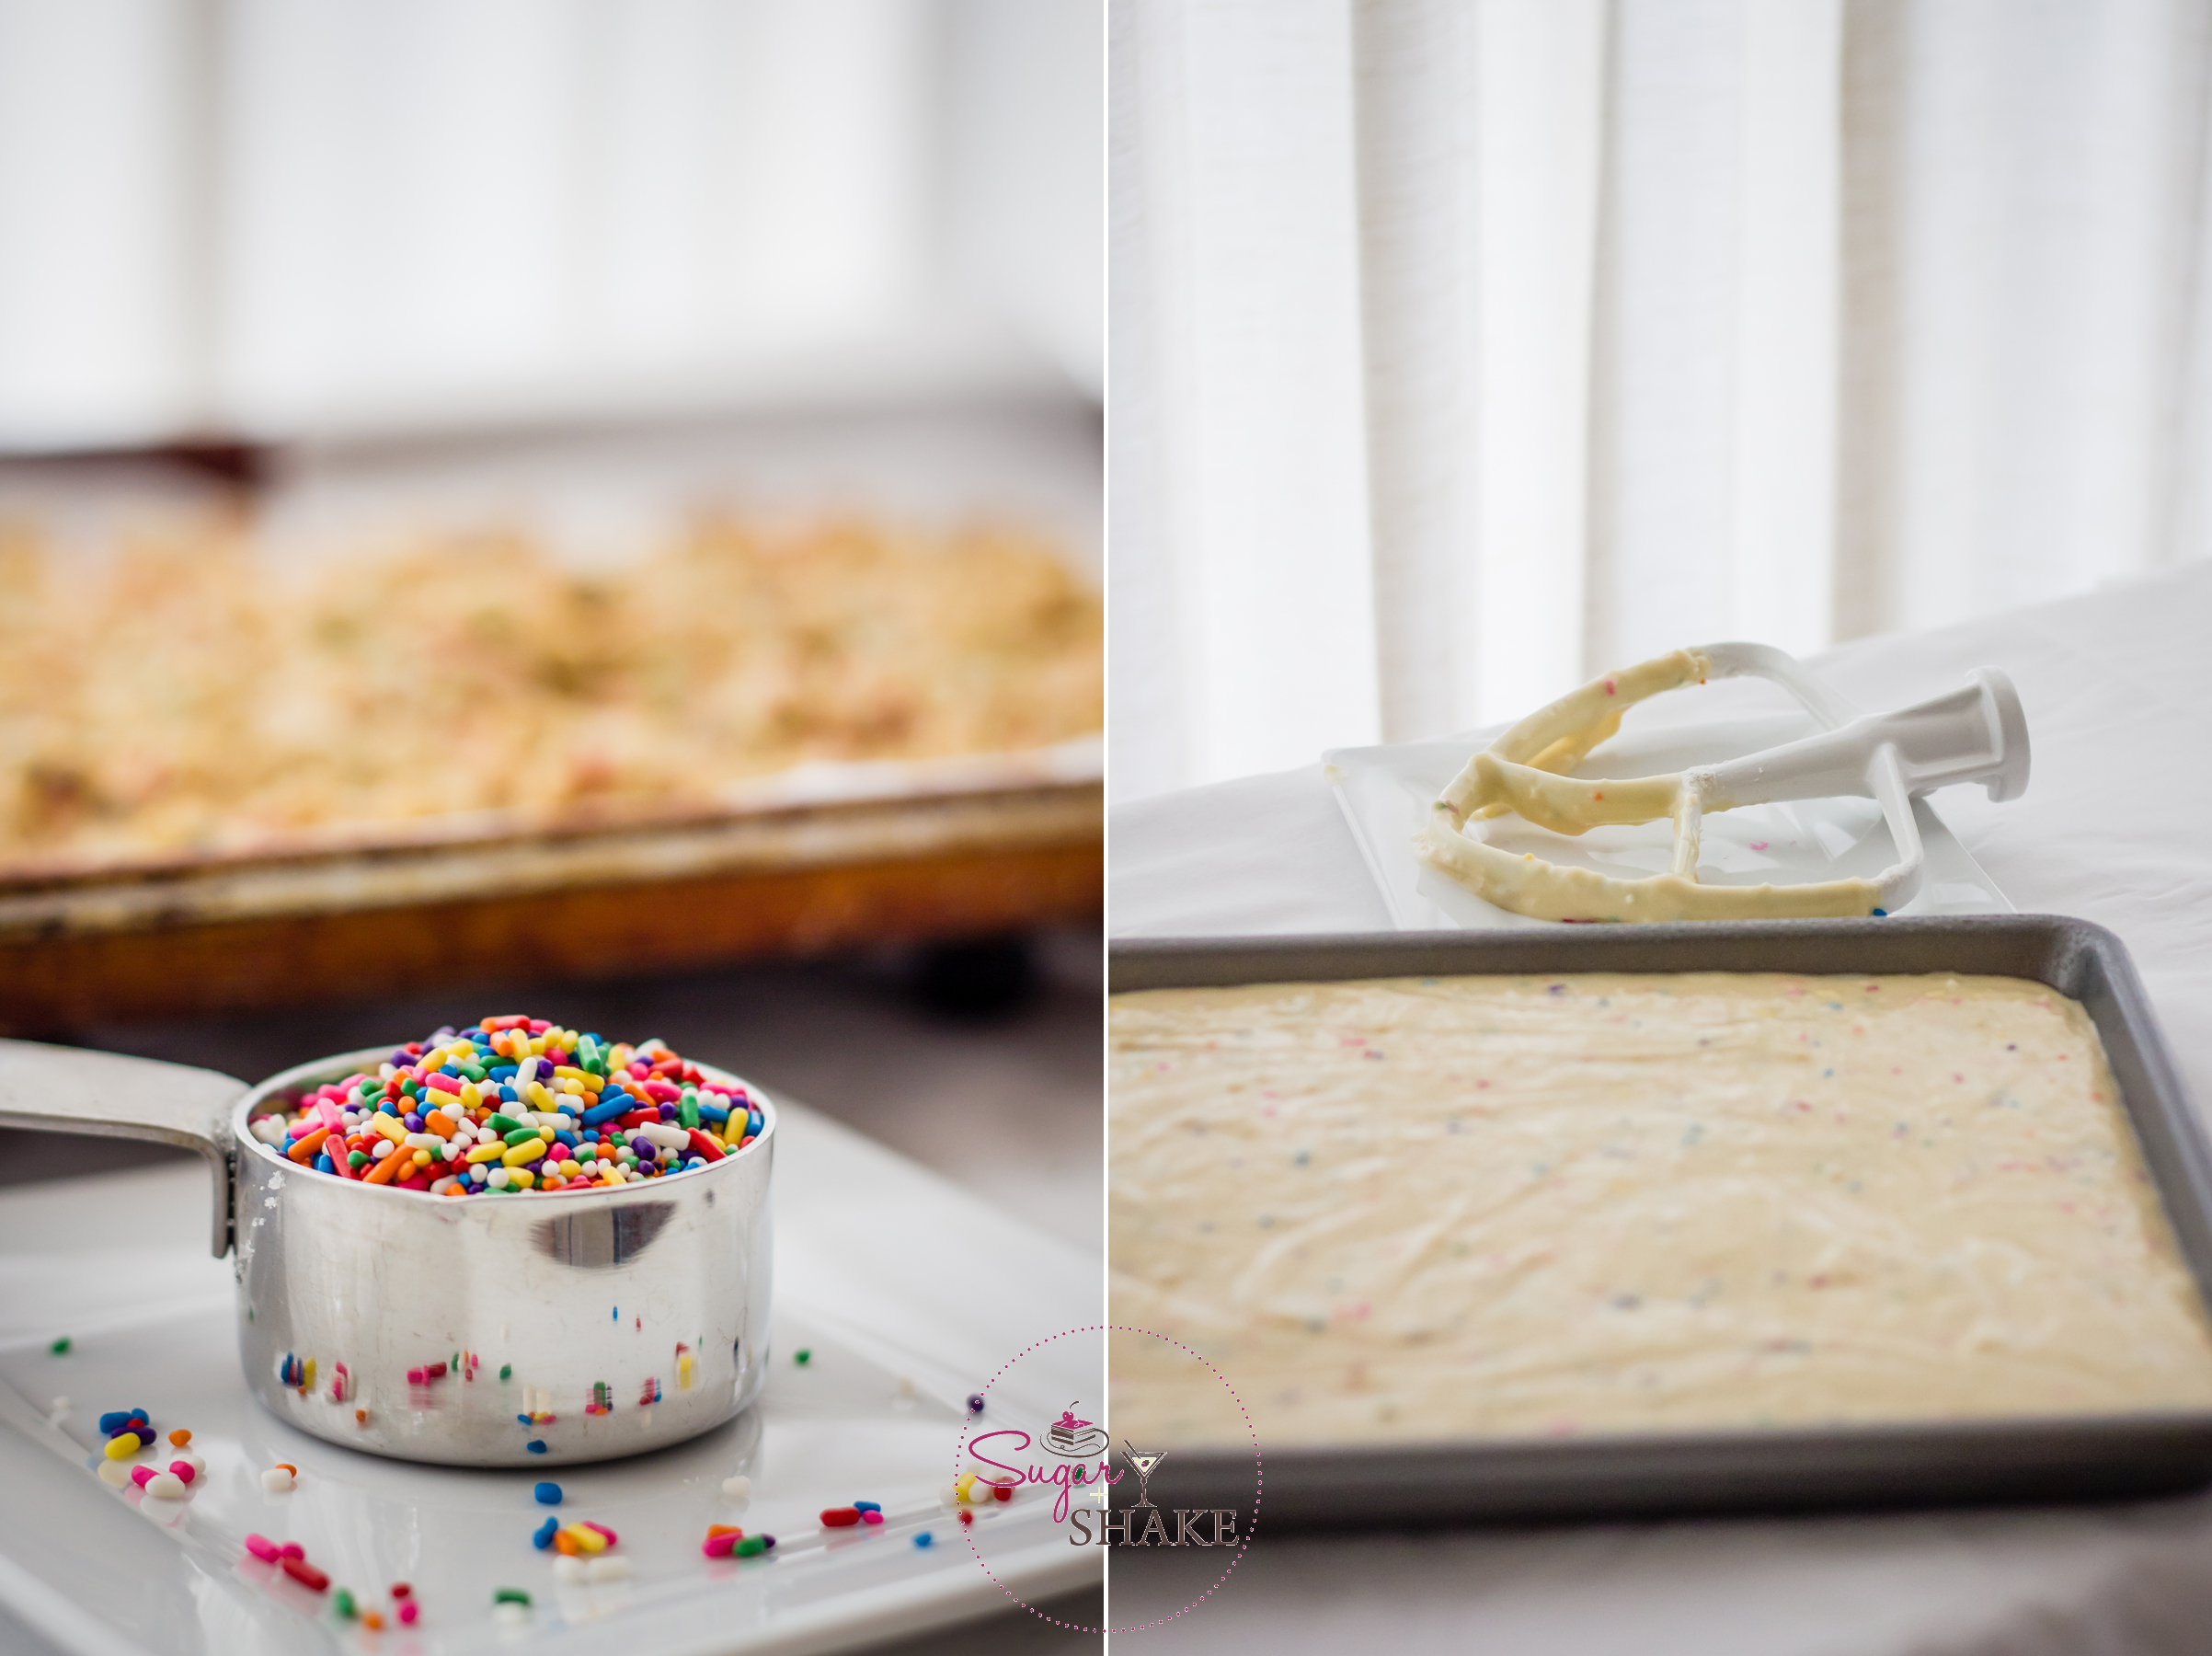 Sneak Peek: Rainbow Sprinkles + Cake Batter = Momofuku Milk Bar Birthday Cake. © 2013 Sugar + Shake